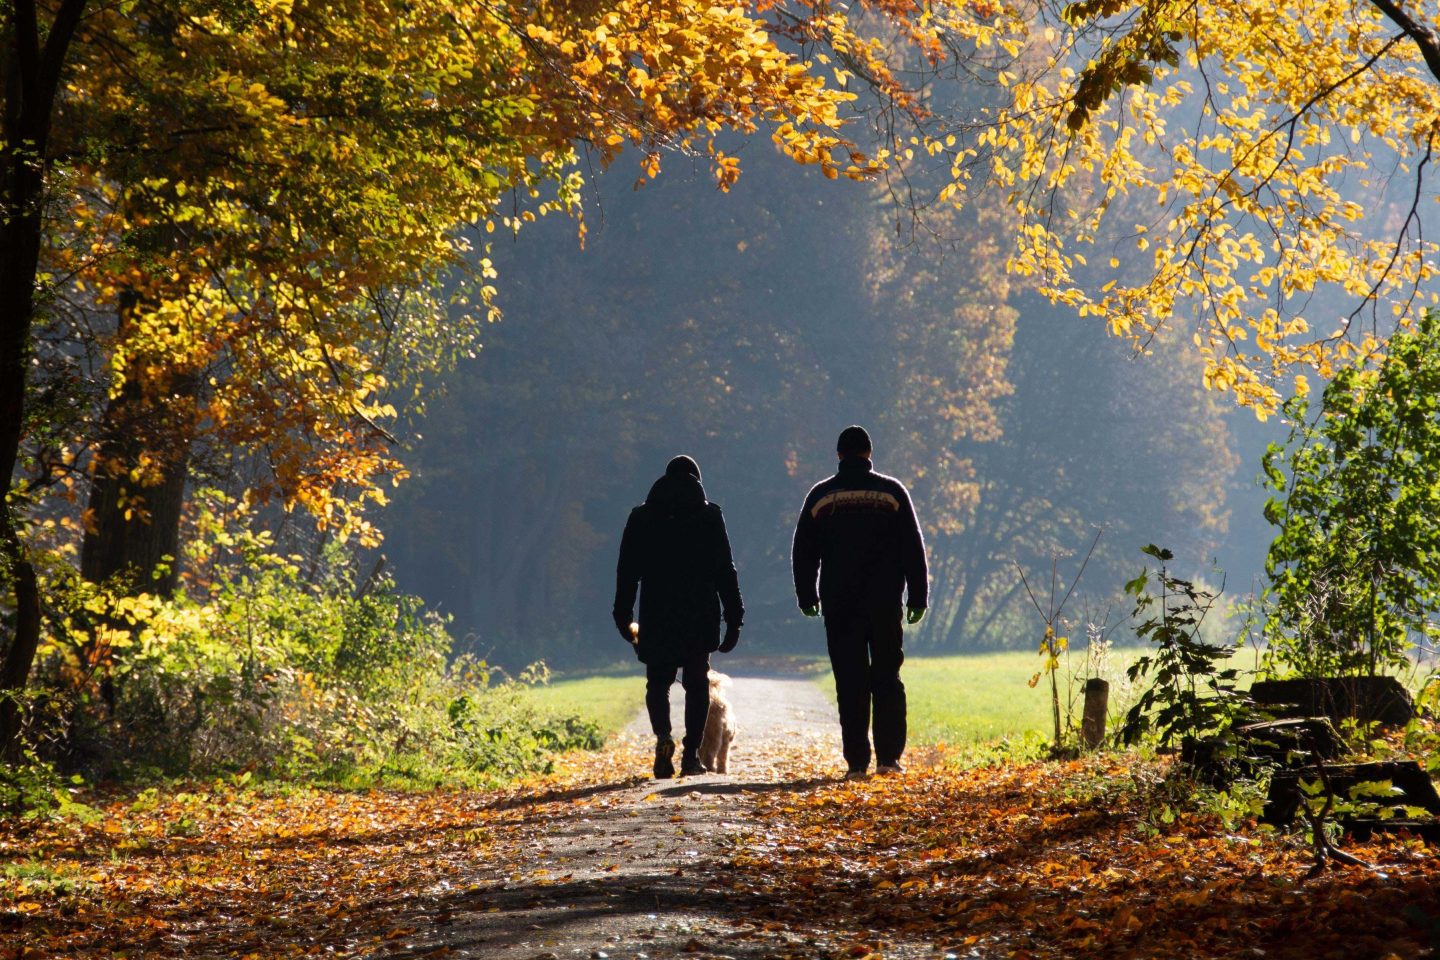 Two people walking outside in autumn